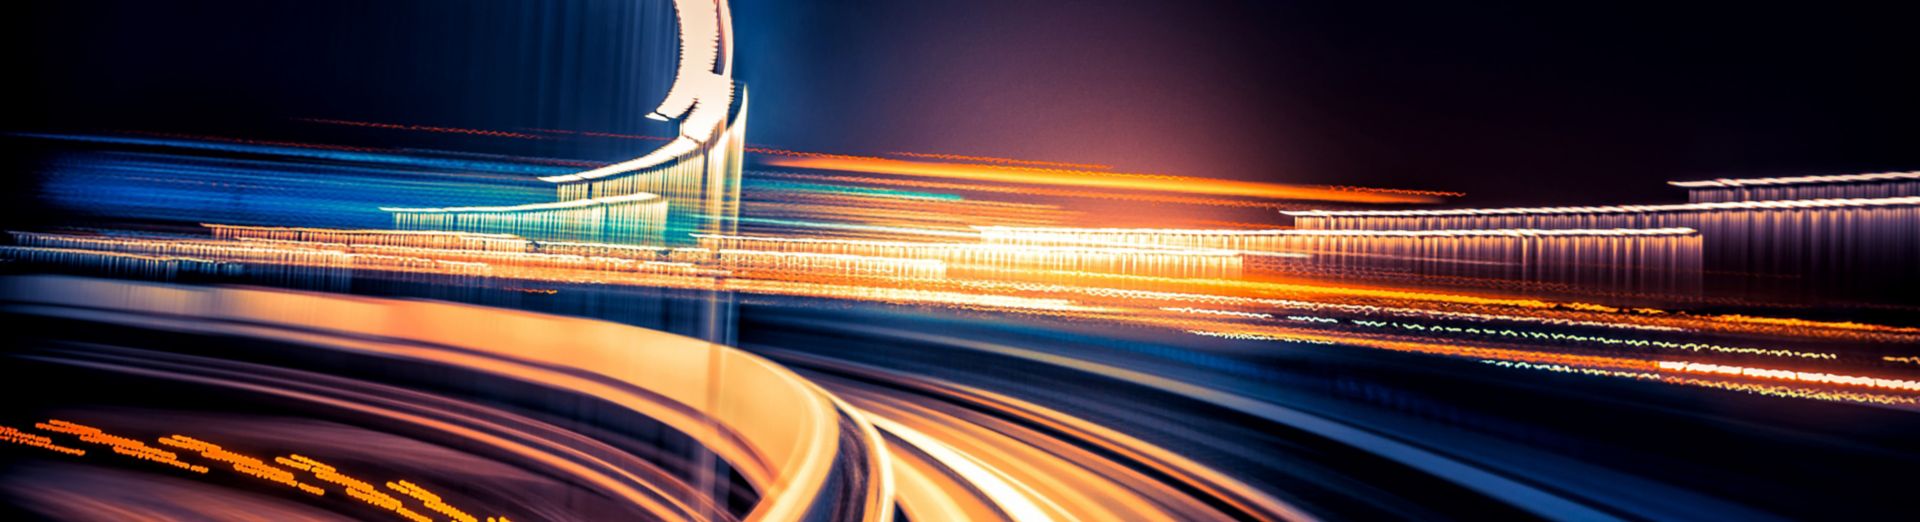 Sieť pripojených diaľnic predstavujúca SAP Business Network